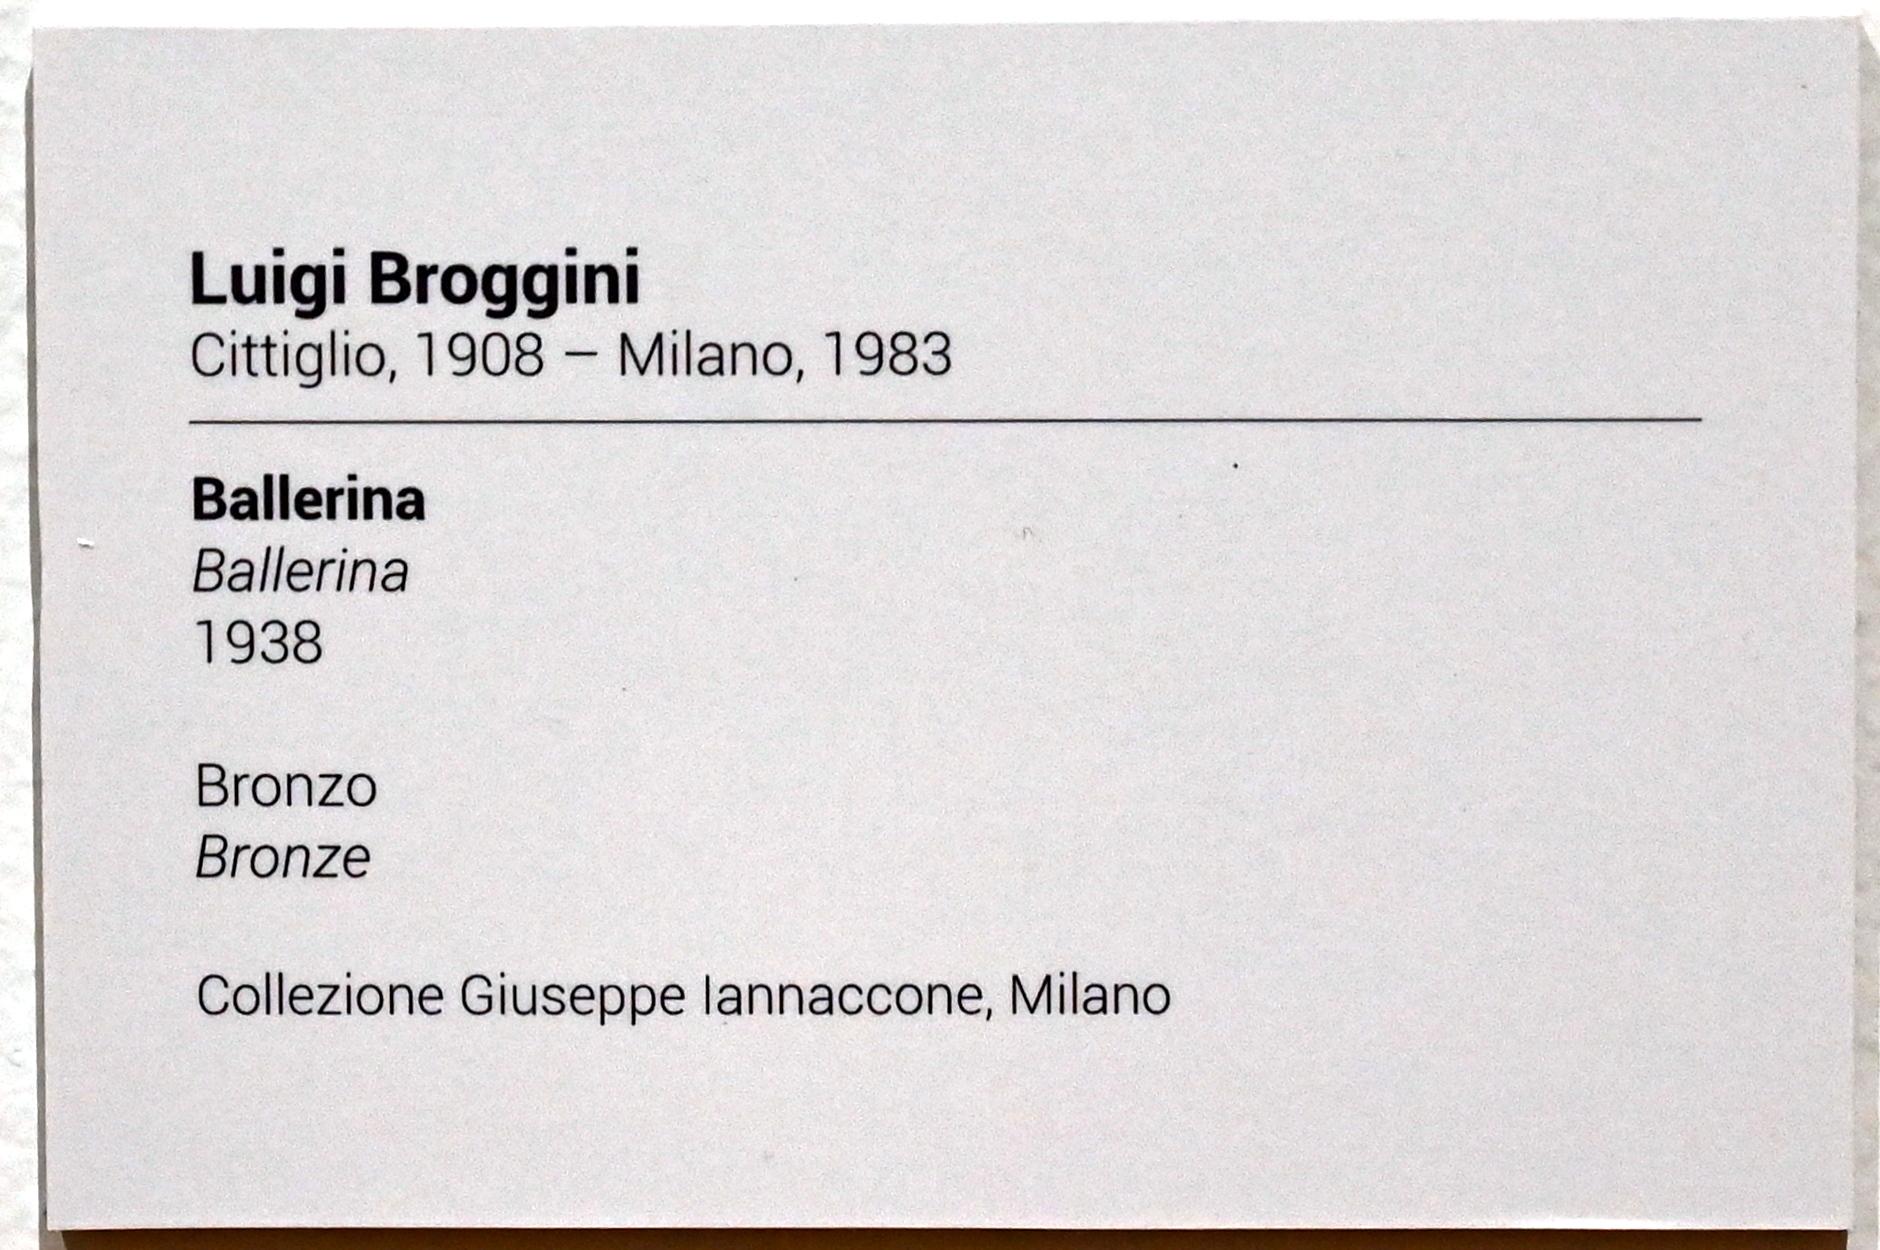 Luigi Broggini (1933–1938), Ballerina, Turin, GAM Torino, Ausstellung "Eine Reise gegen den Strom" vom 05.05.-12.09.2021, Saal 3, 1938, Bild 3/3